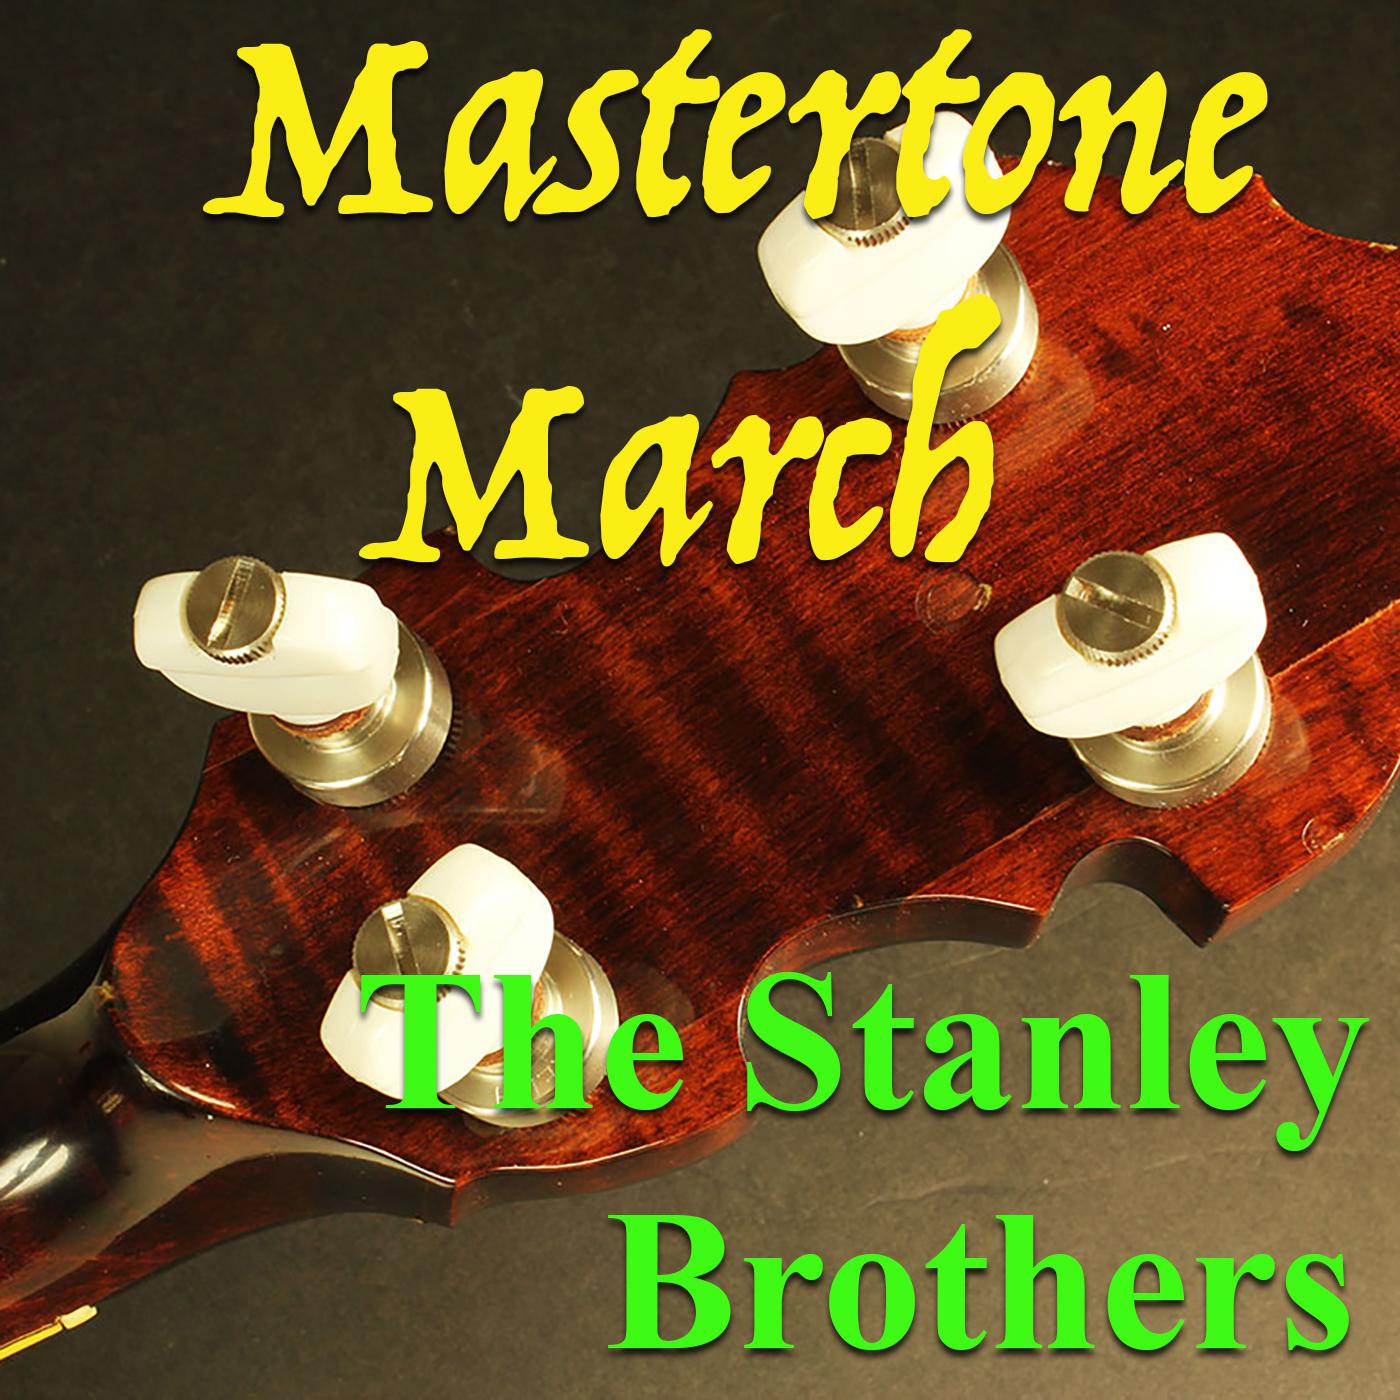 Mastertone March